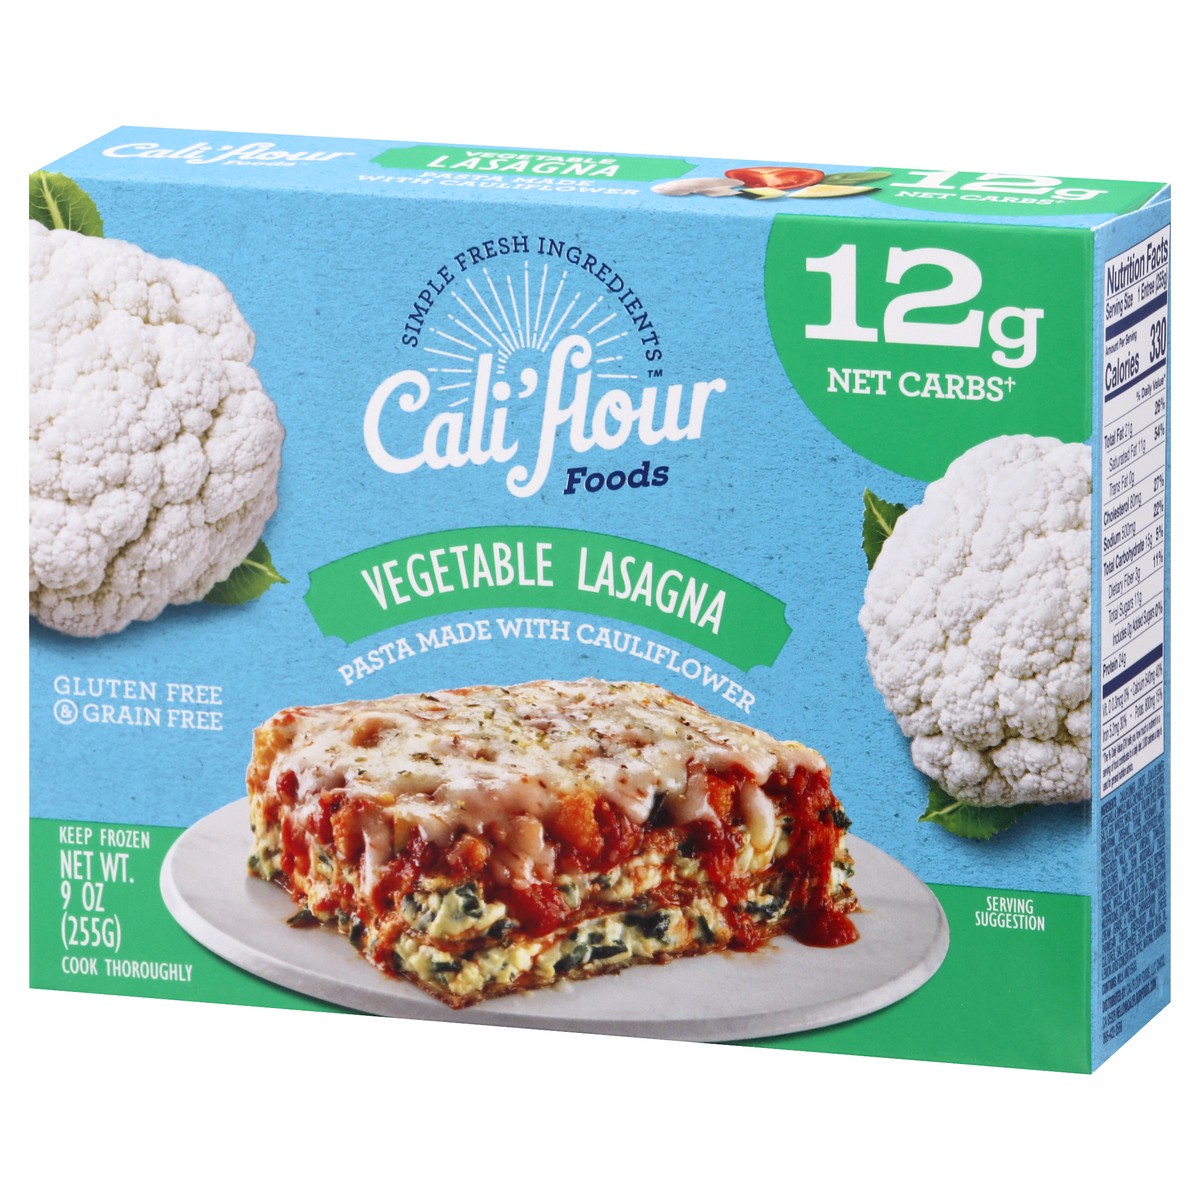 slide 7 of 13, Cali'flour Foods Vegetable Lasagna 9 oz, 9 oz